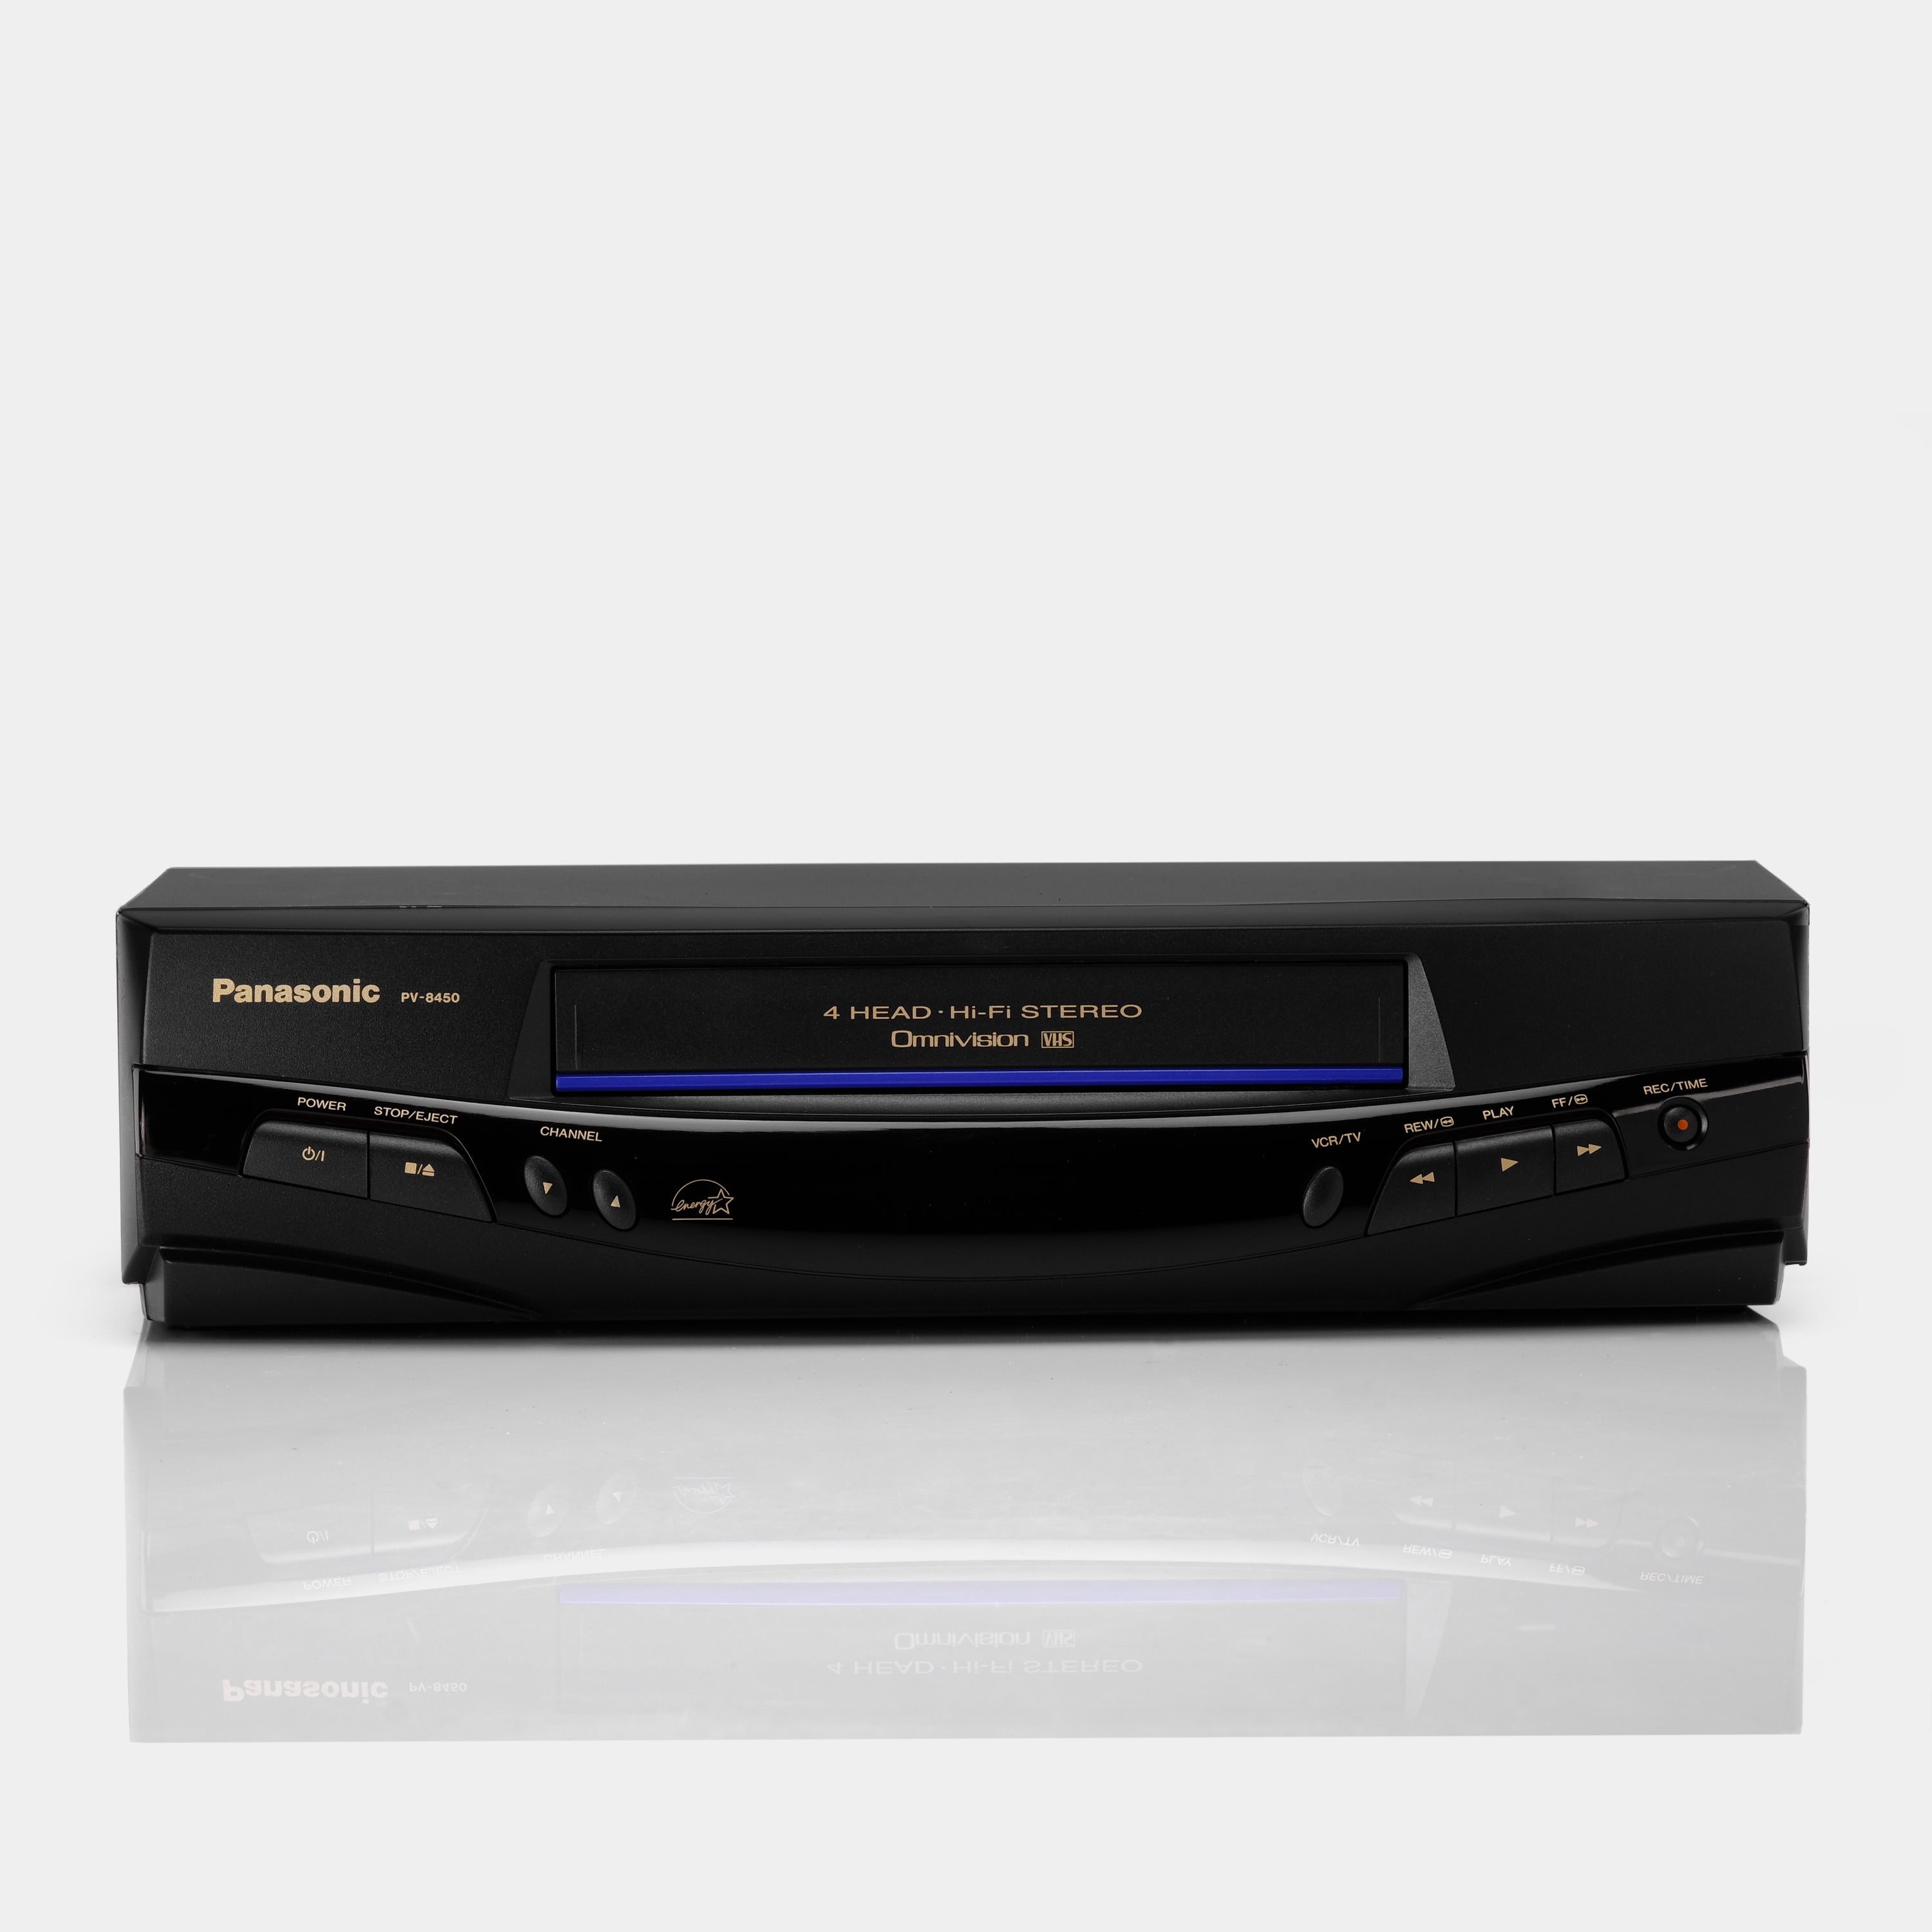 Panasonic PV-8450 VCR VHS Player